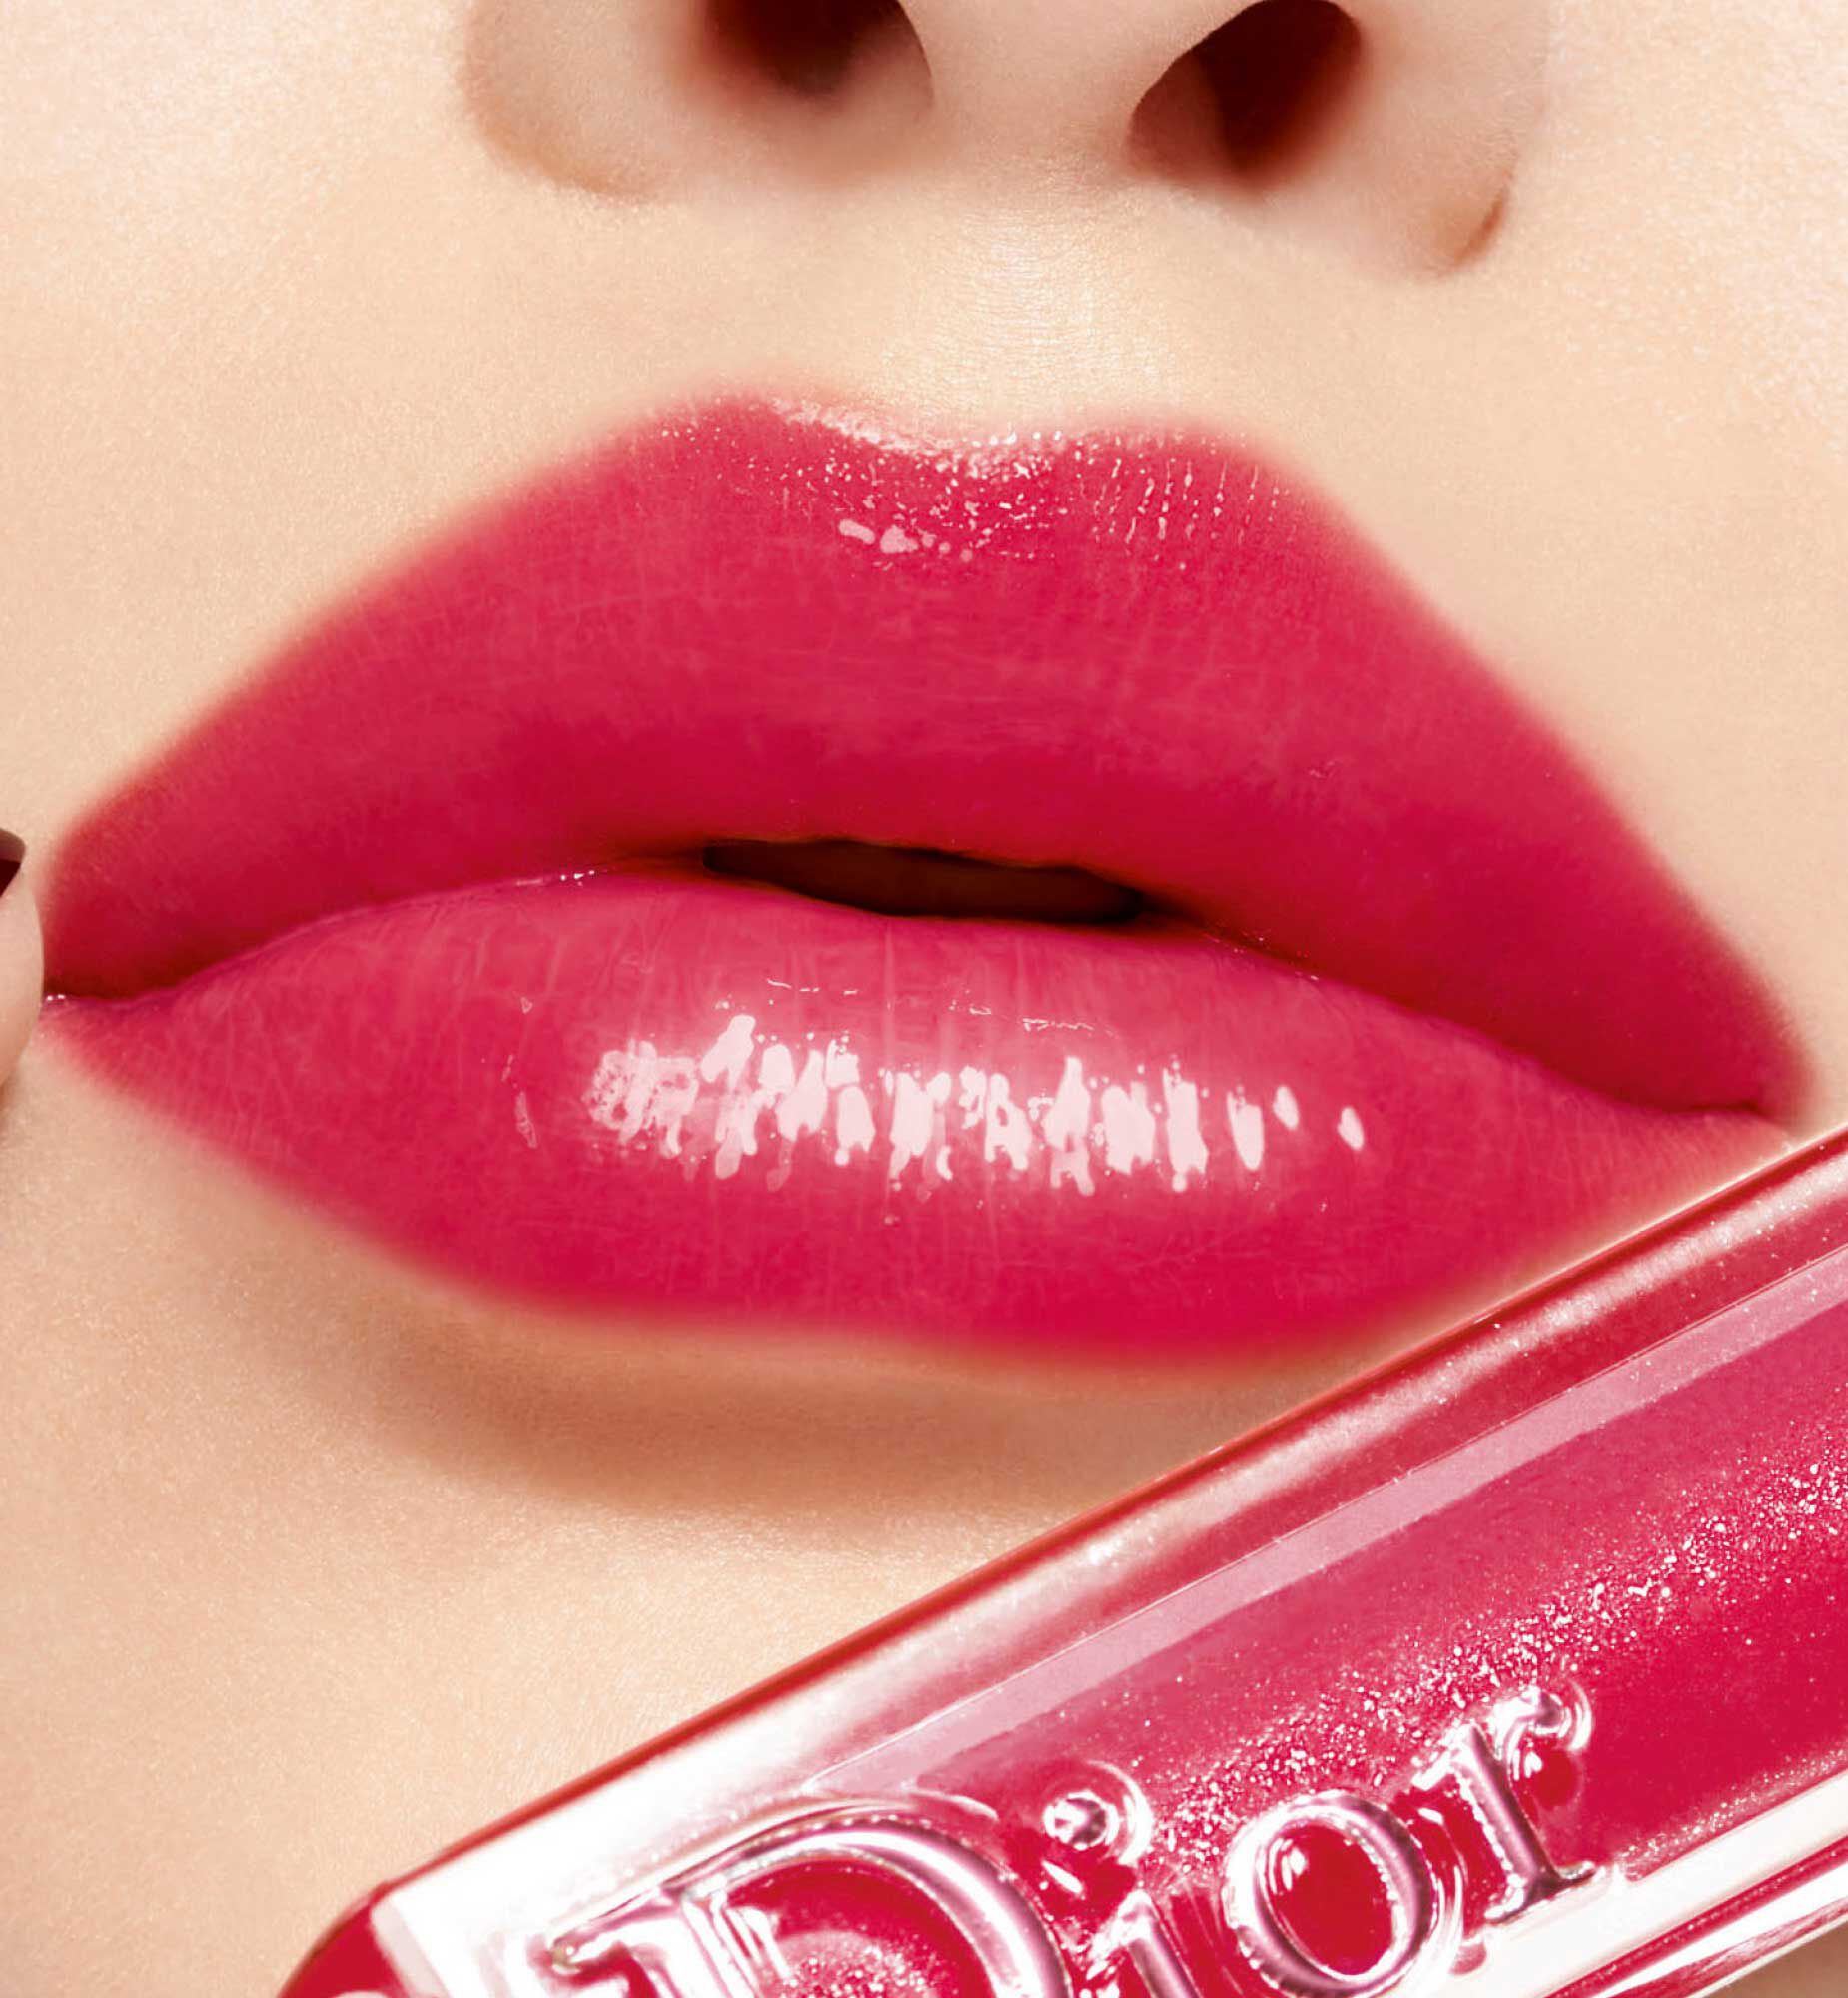 Phấn Má Hồng Dior Rouge Blush 643 Stand Out Cam Đất  Thế Giới Son Môi